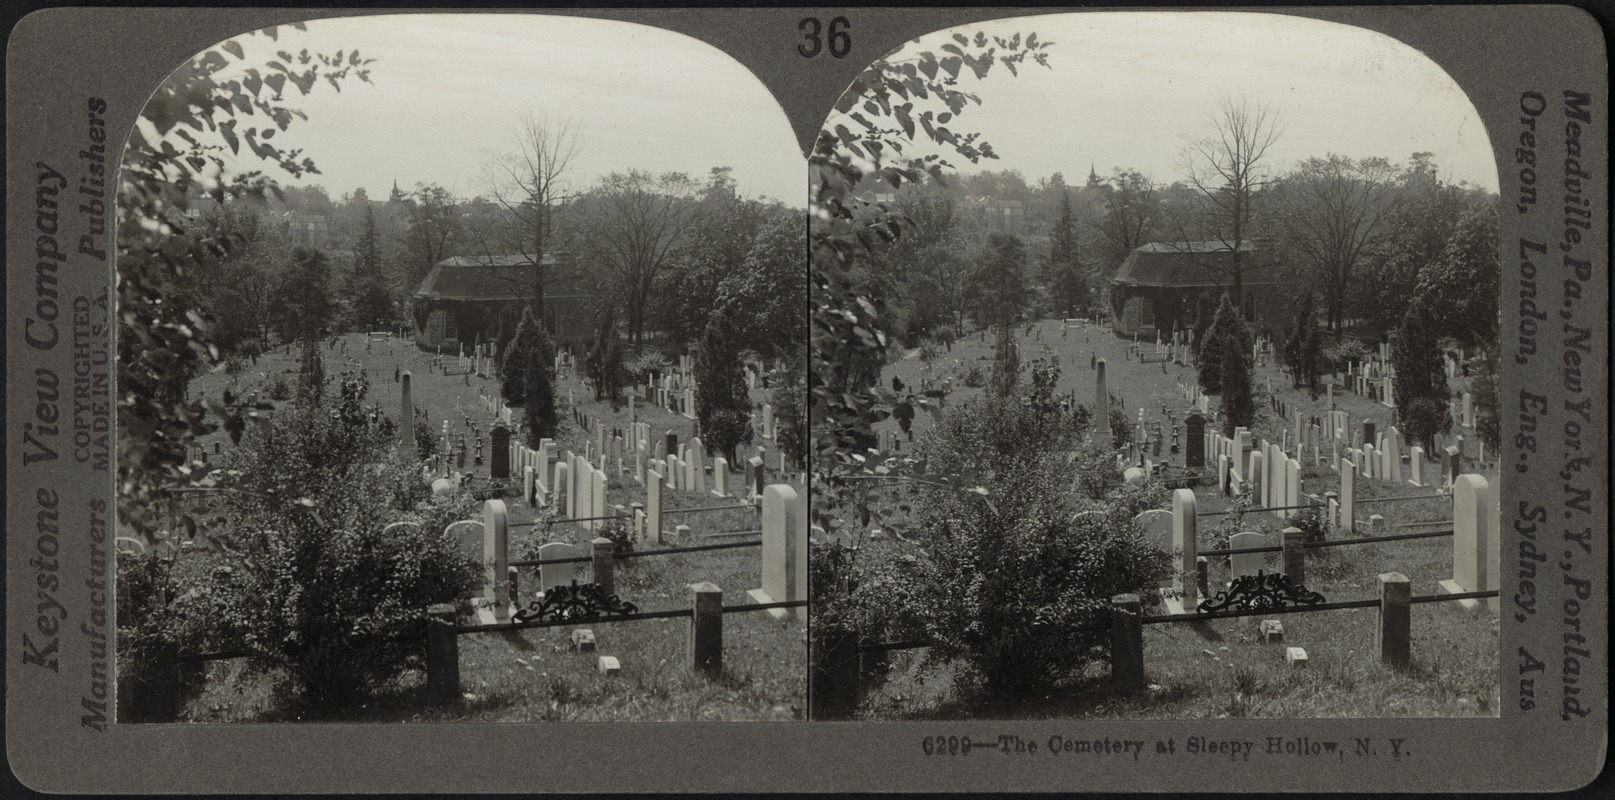 Cemetery at Sleepy Hollow, N.Y.